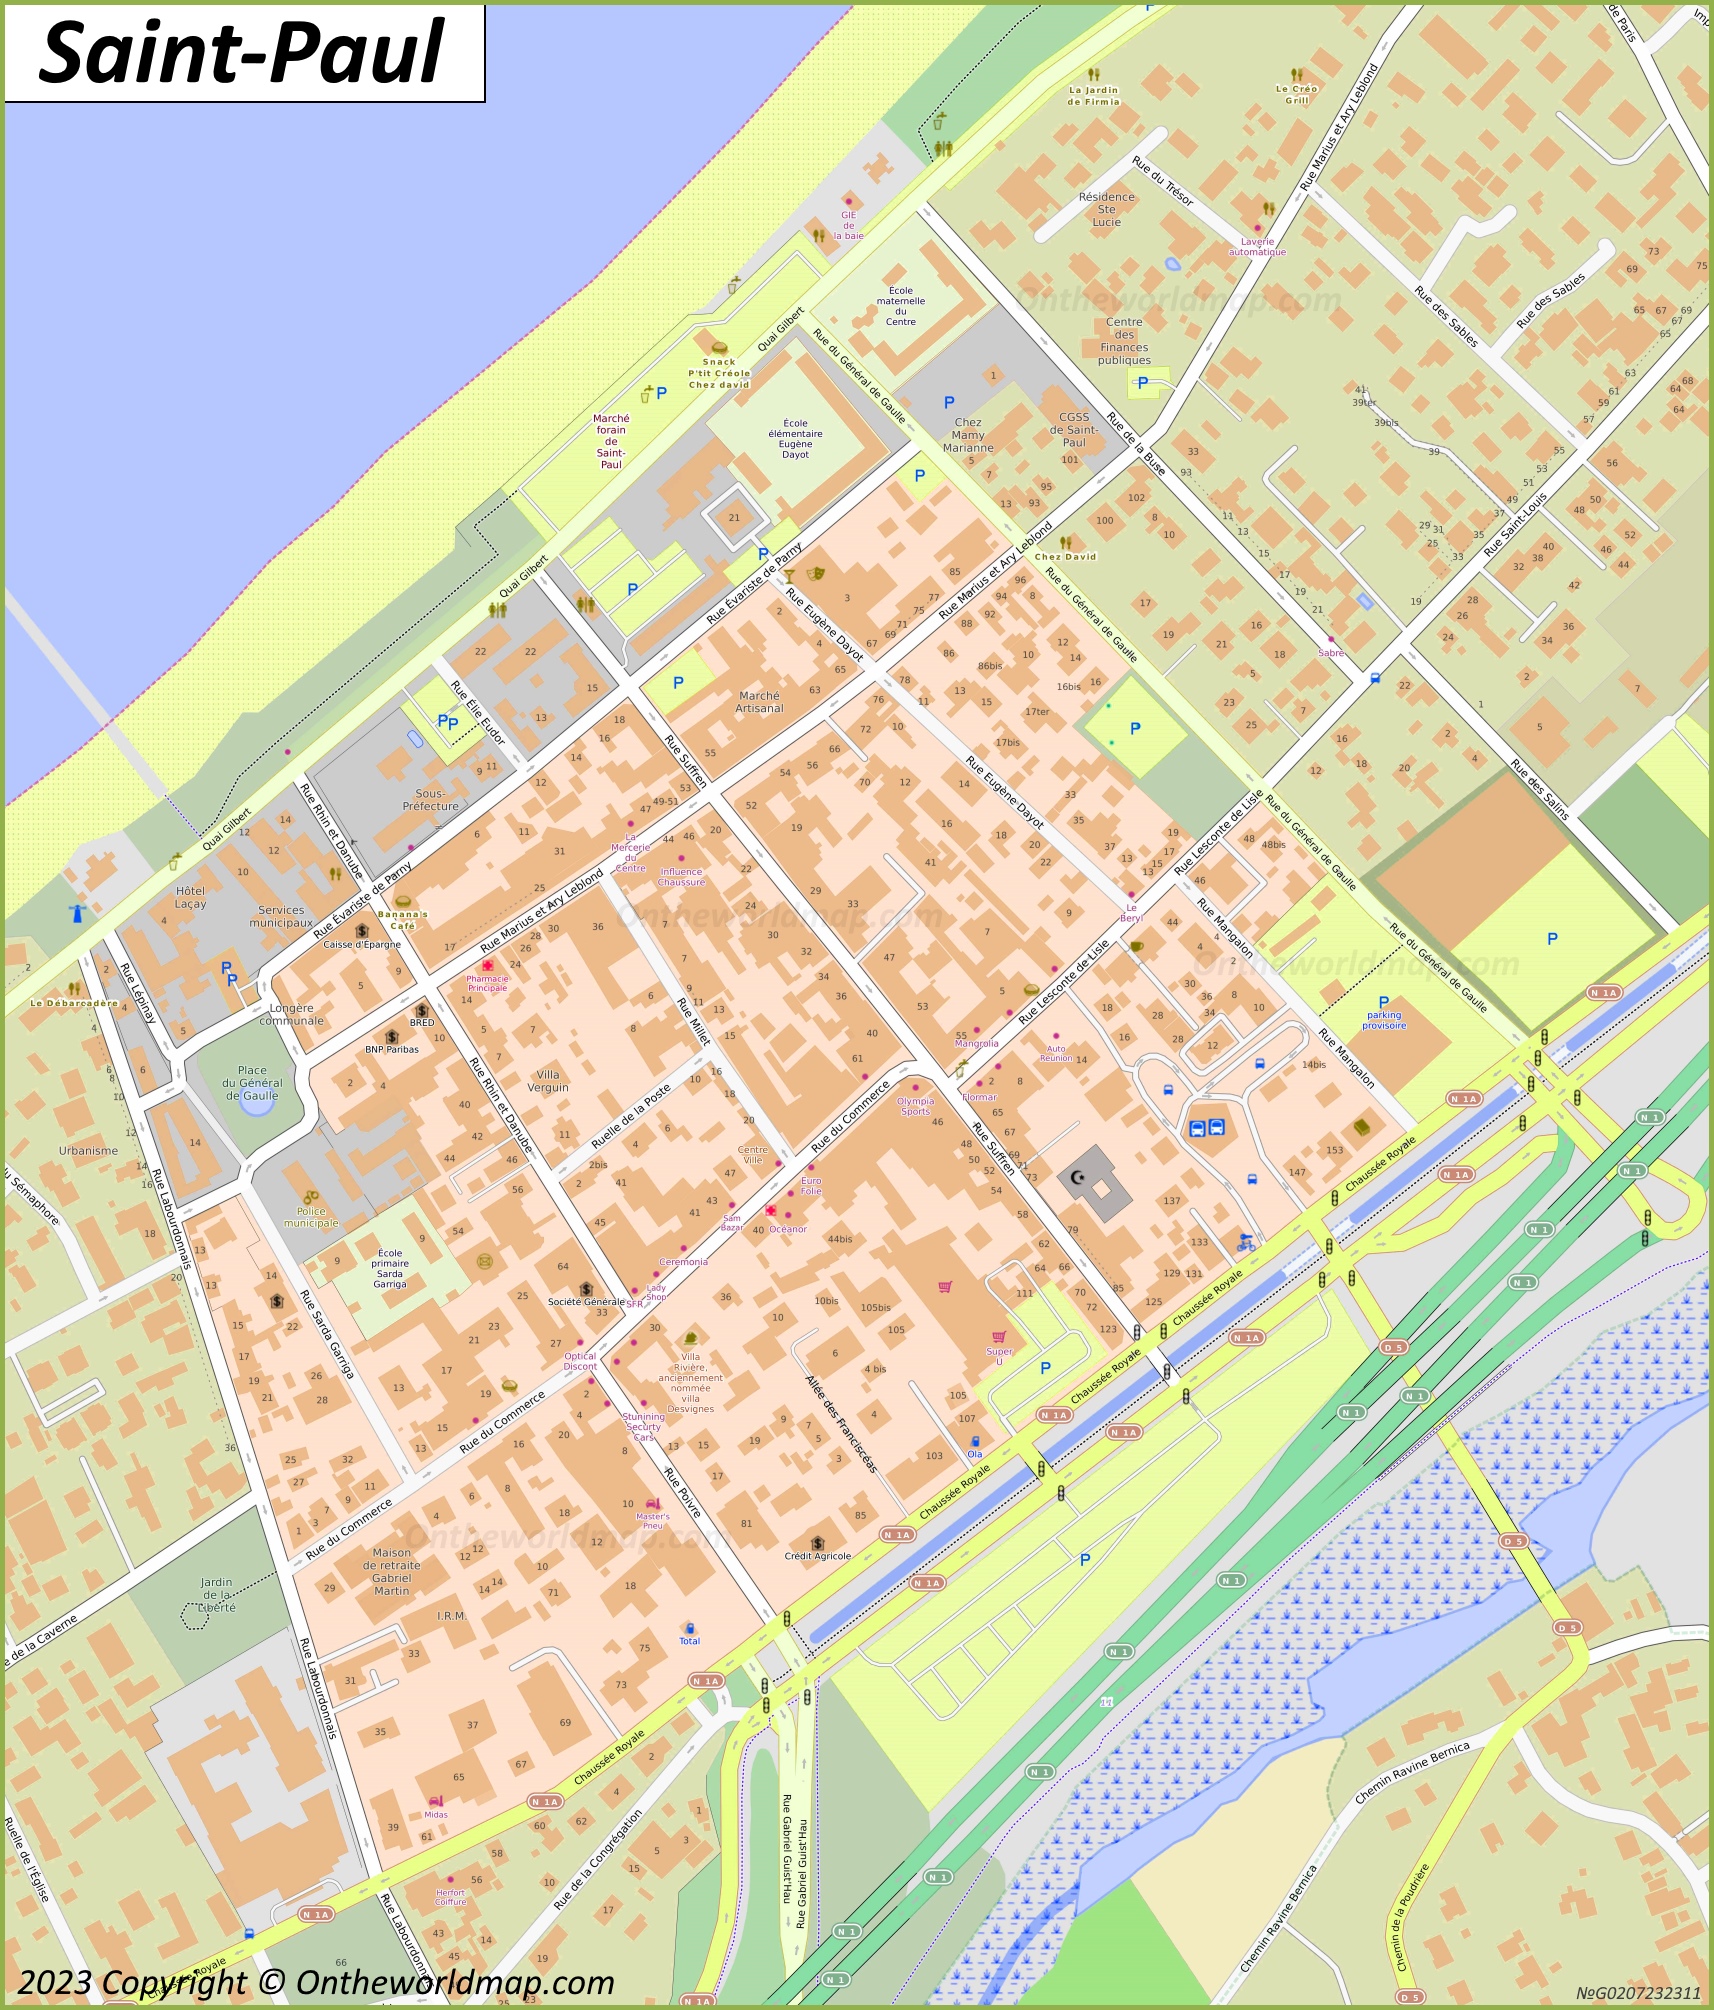 Saint-Paul City Centre Map